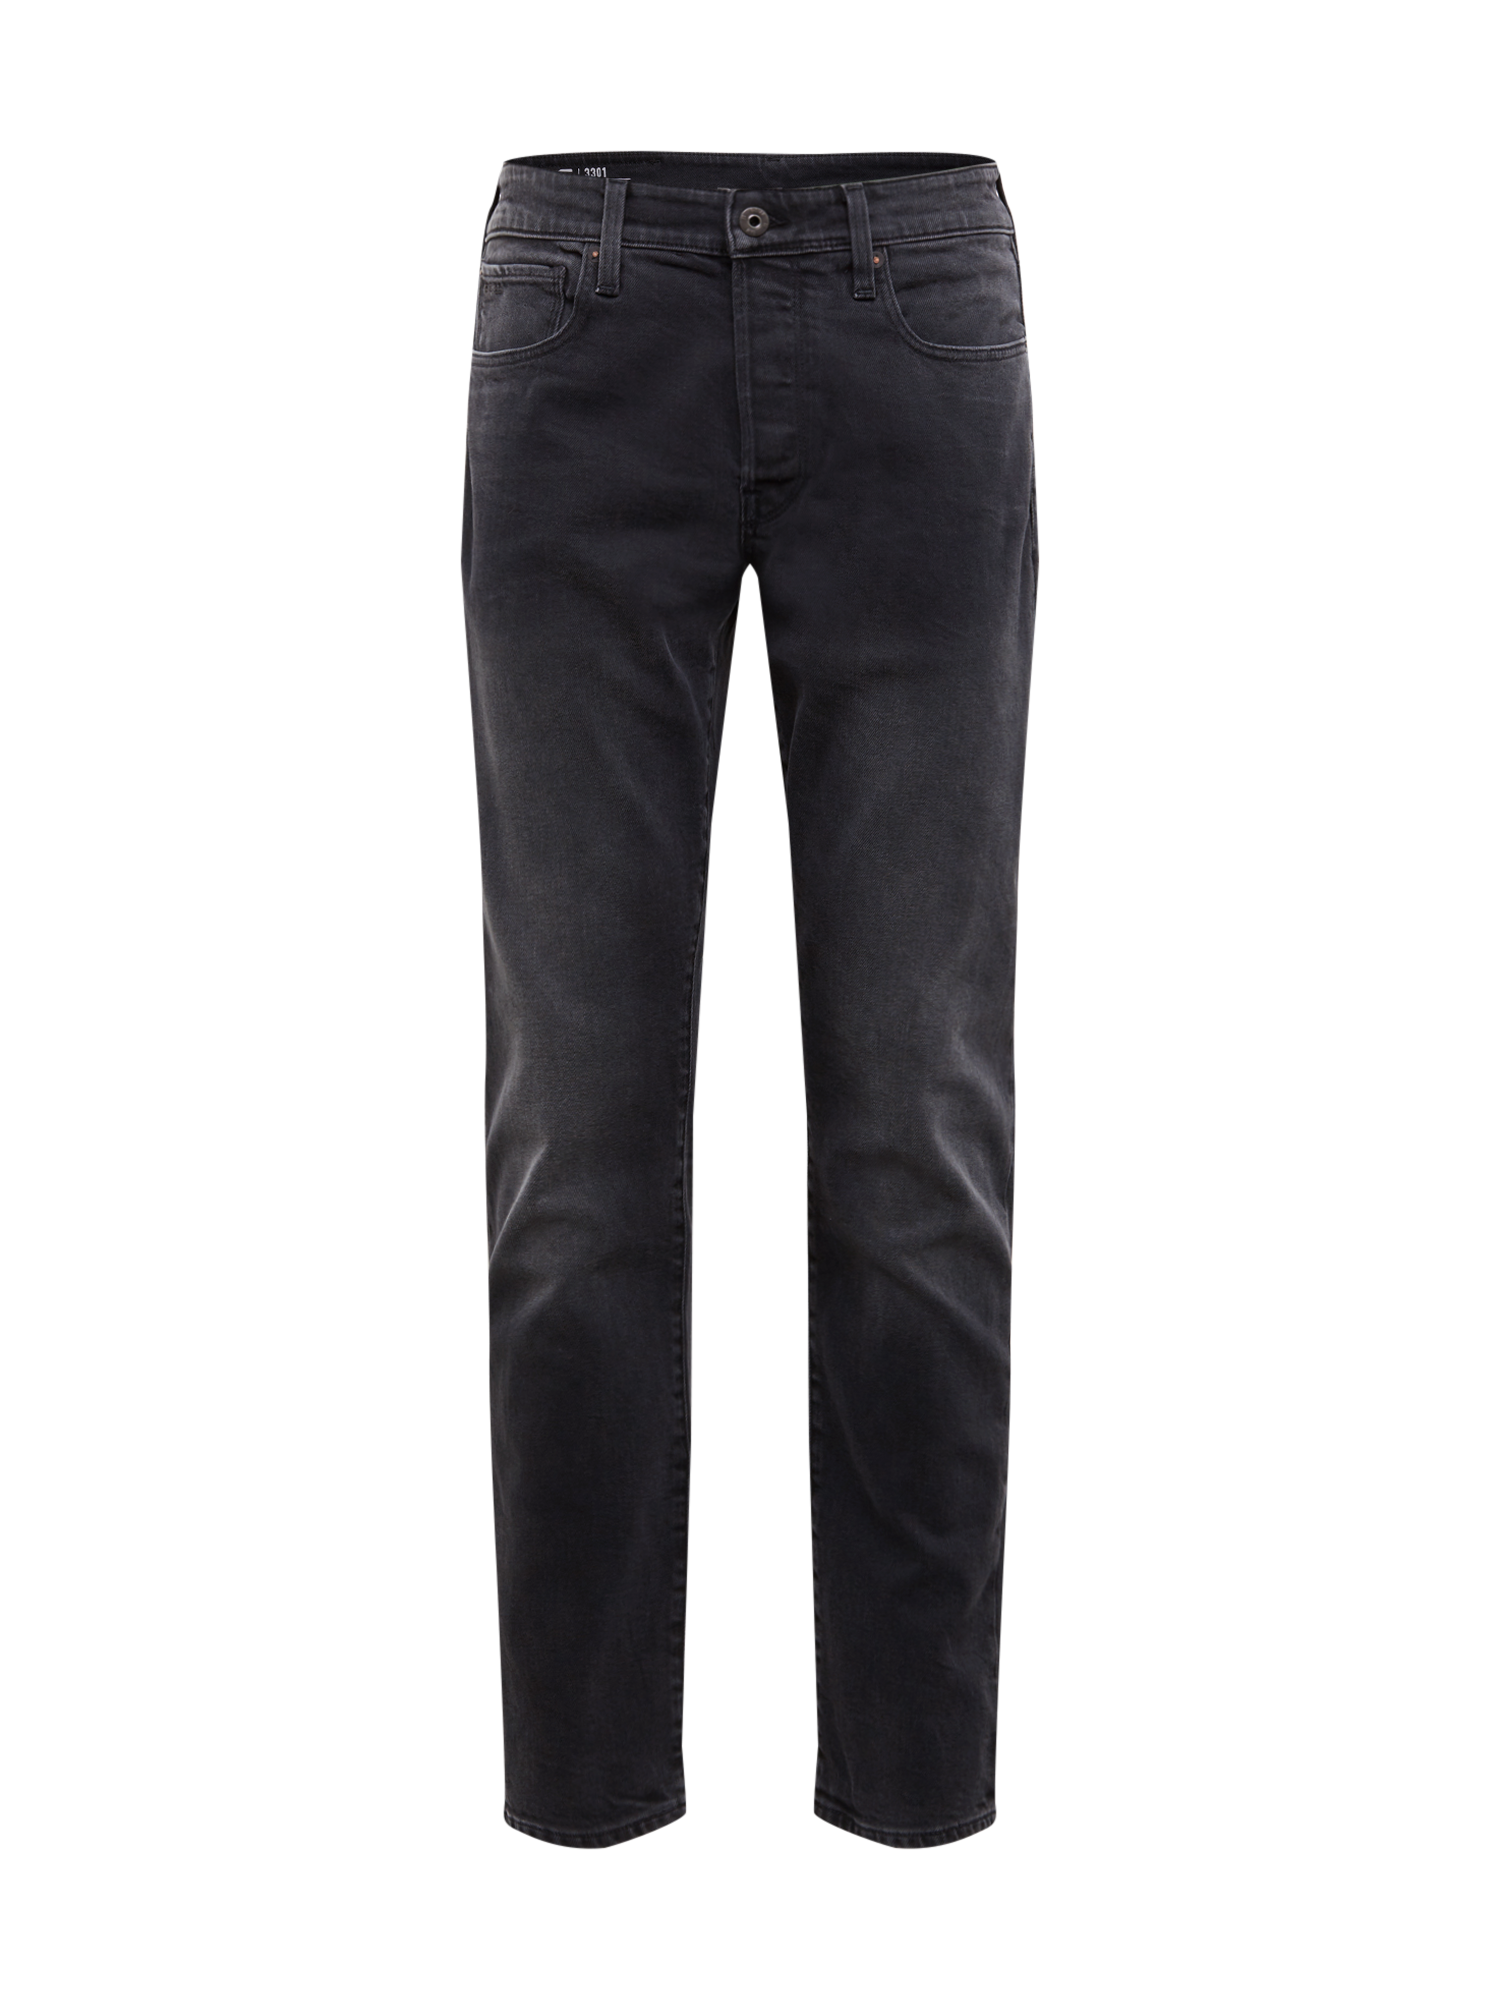 Odzież Spodnie & jeansy G-Star RAW Jeansy 3301 Tapered w kolorze Czarnym 